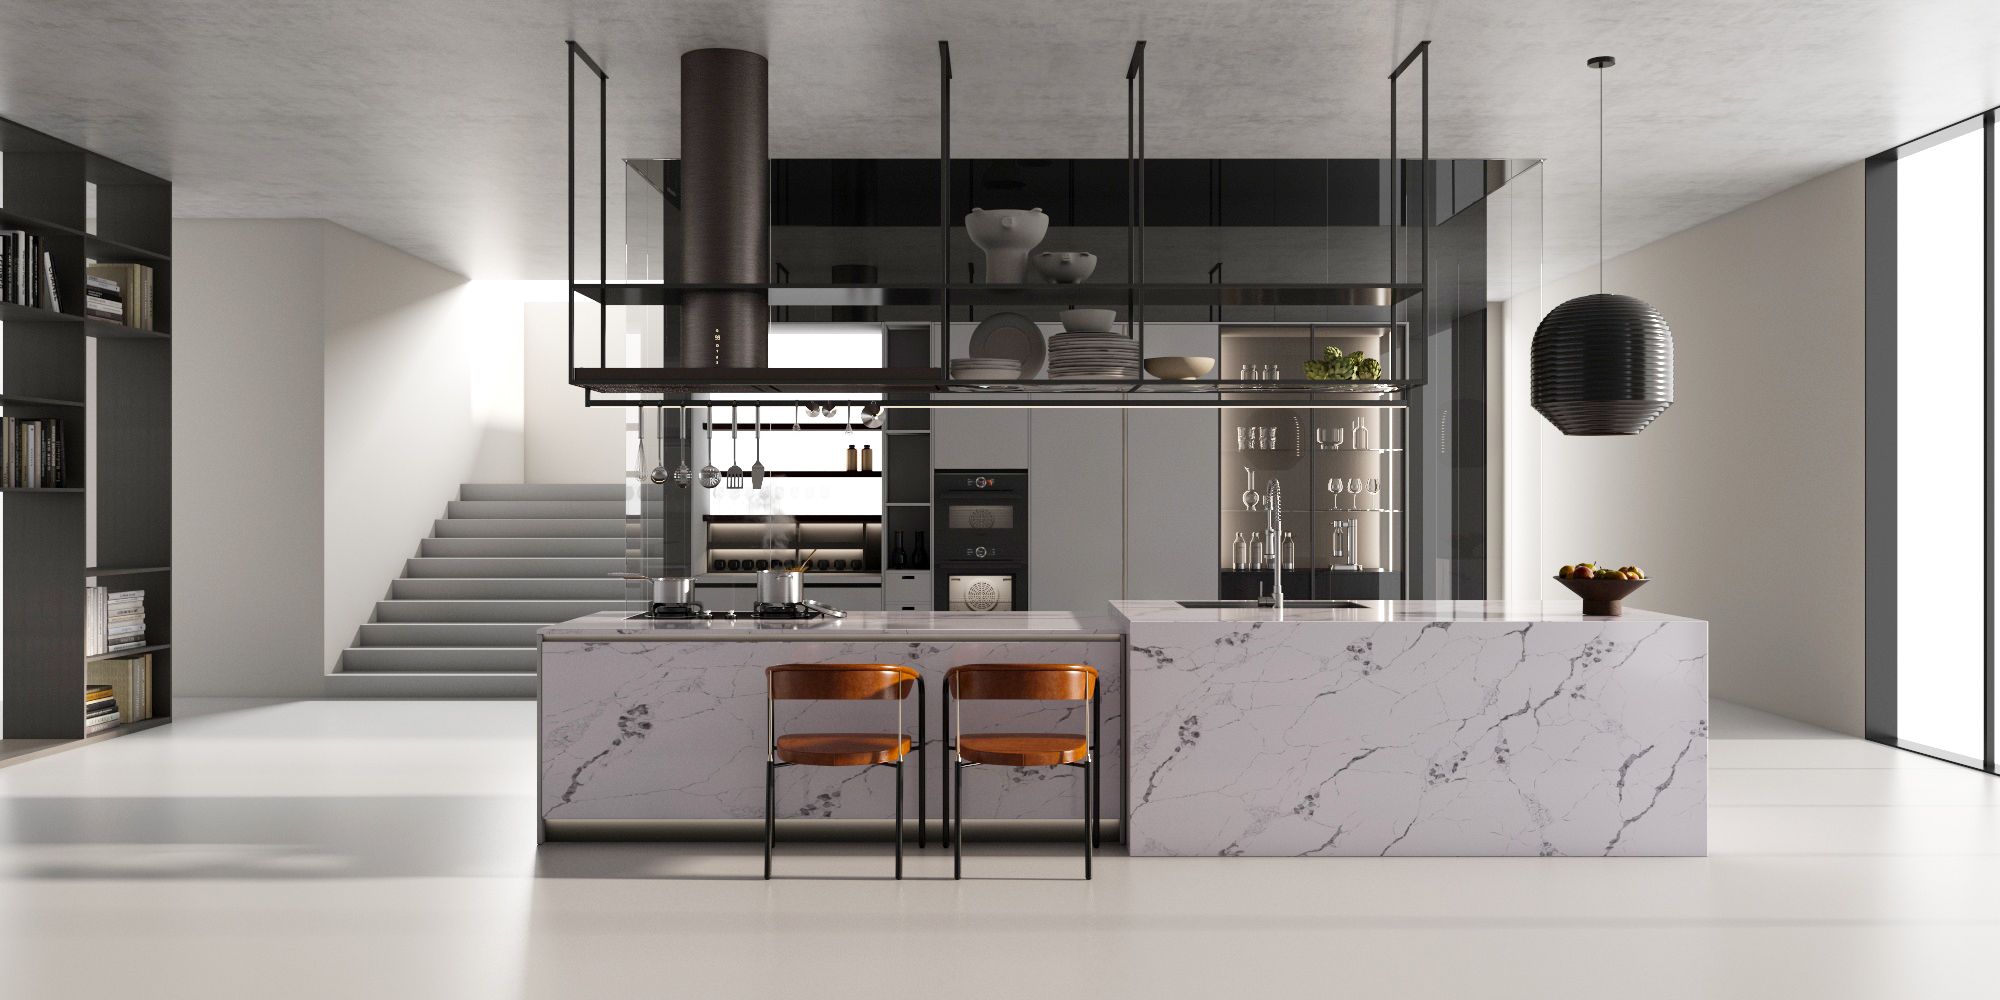 凯发k8国际台面｜重新定义厨房 打造最理想的厨房空间